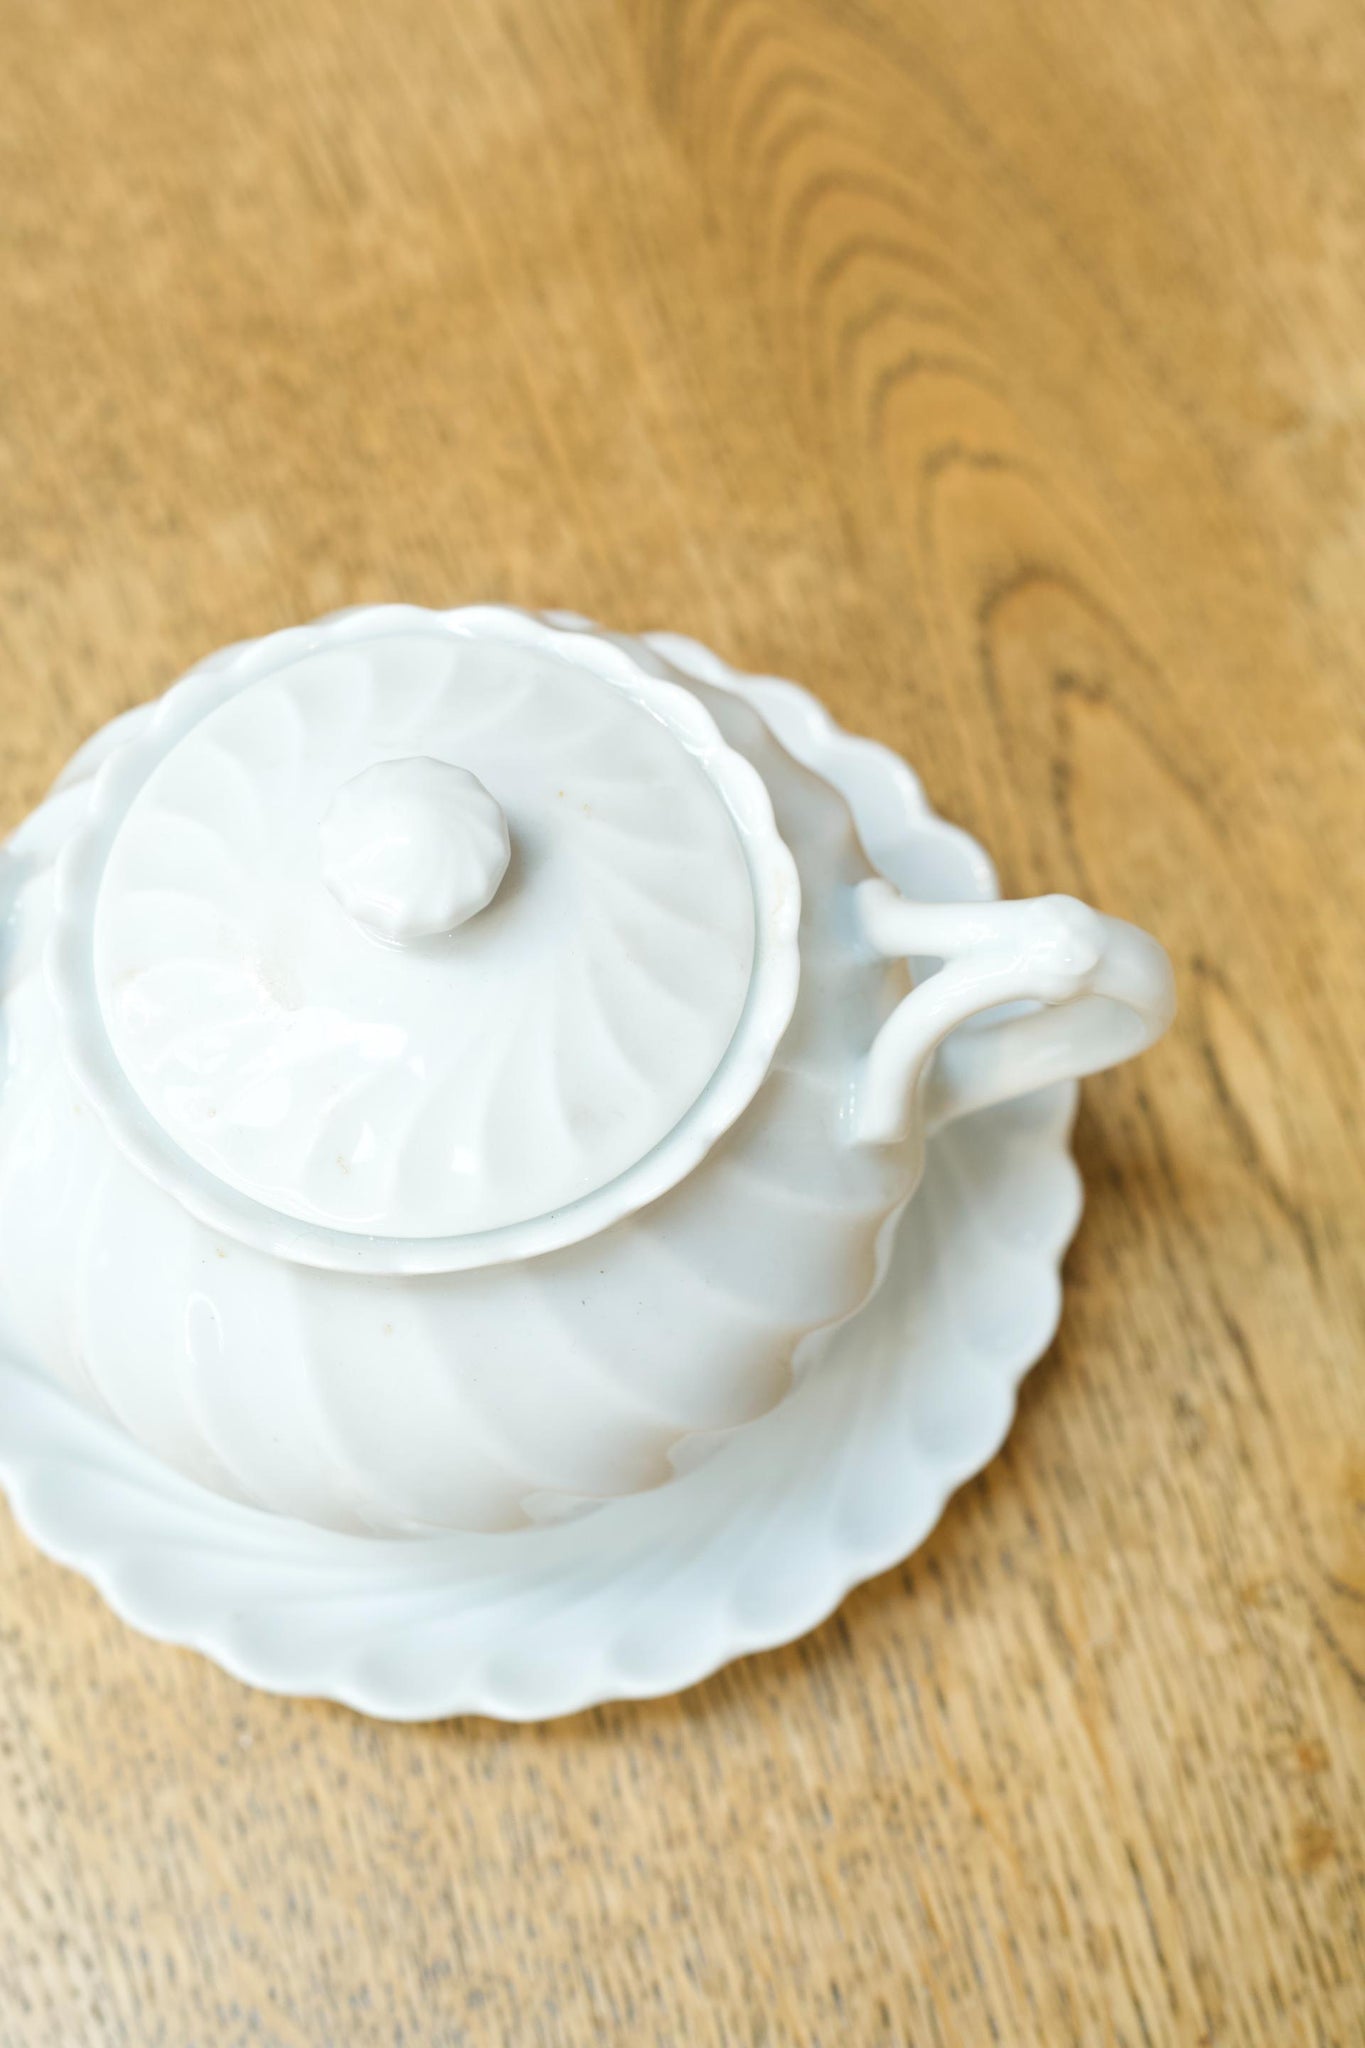 Vintage white porcelain sugar bowl and saucer